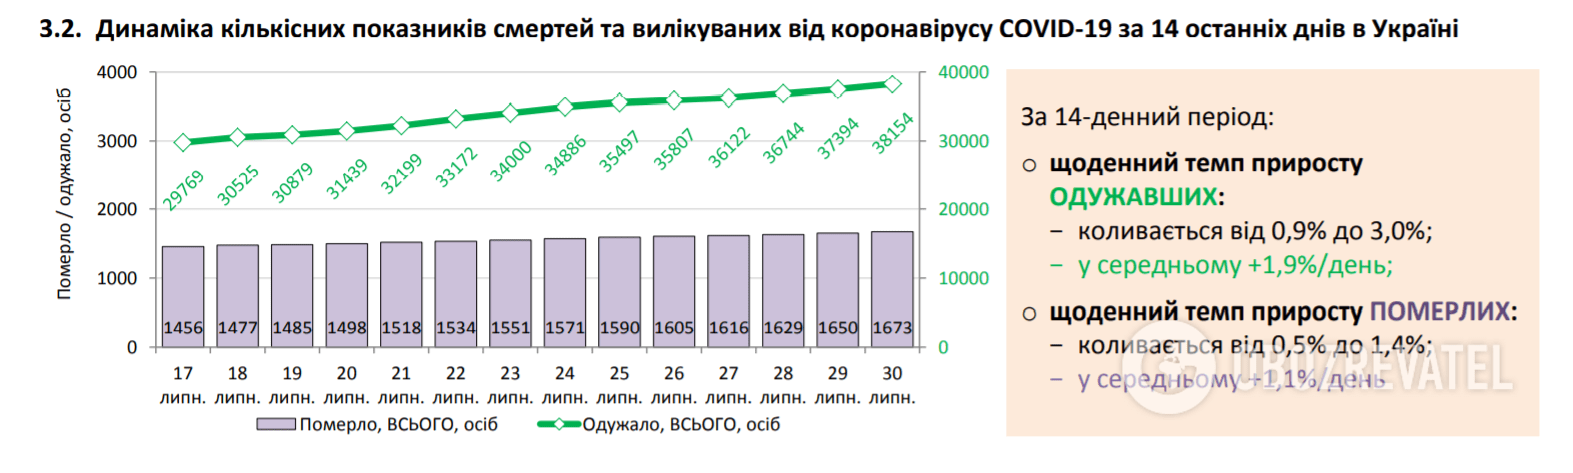 Статистика по COVID-19 в Україні